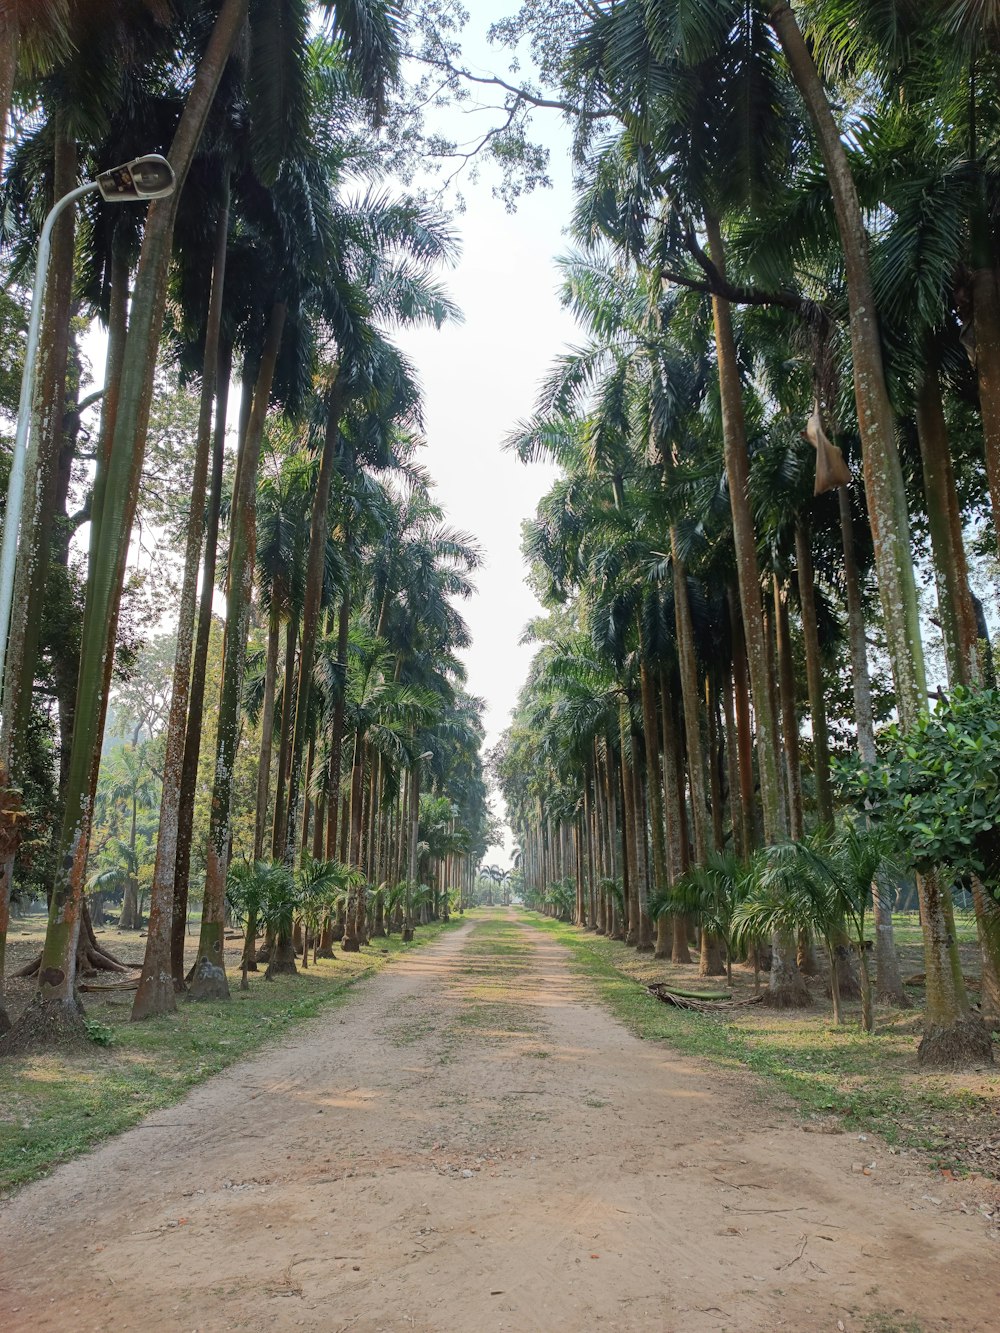 Eine unbefestigte Straße, umgeben von hohen Palmen